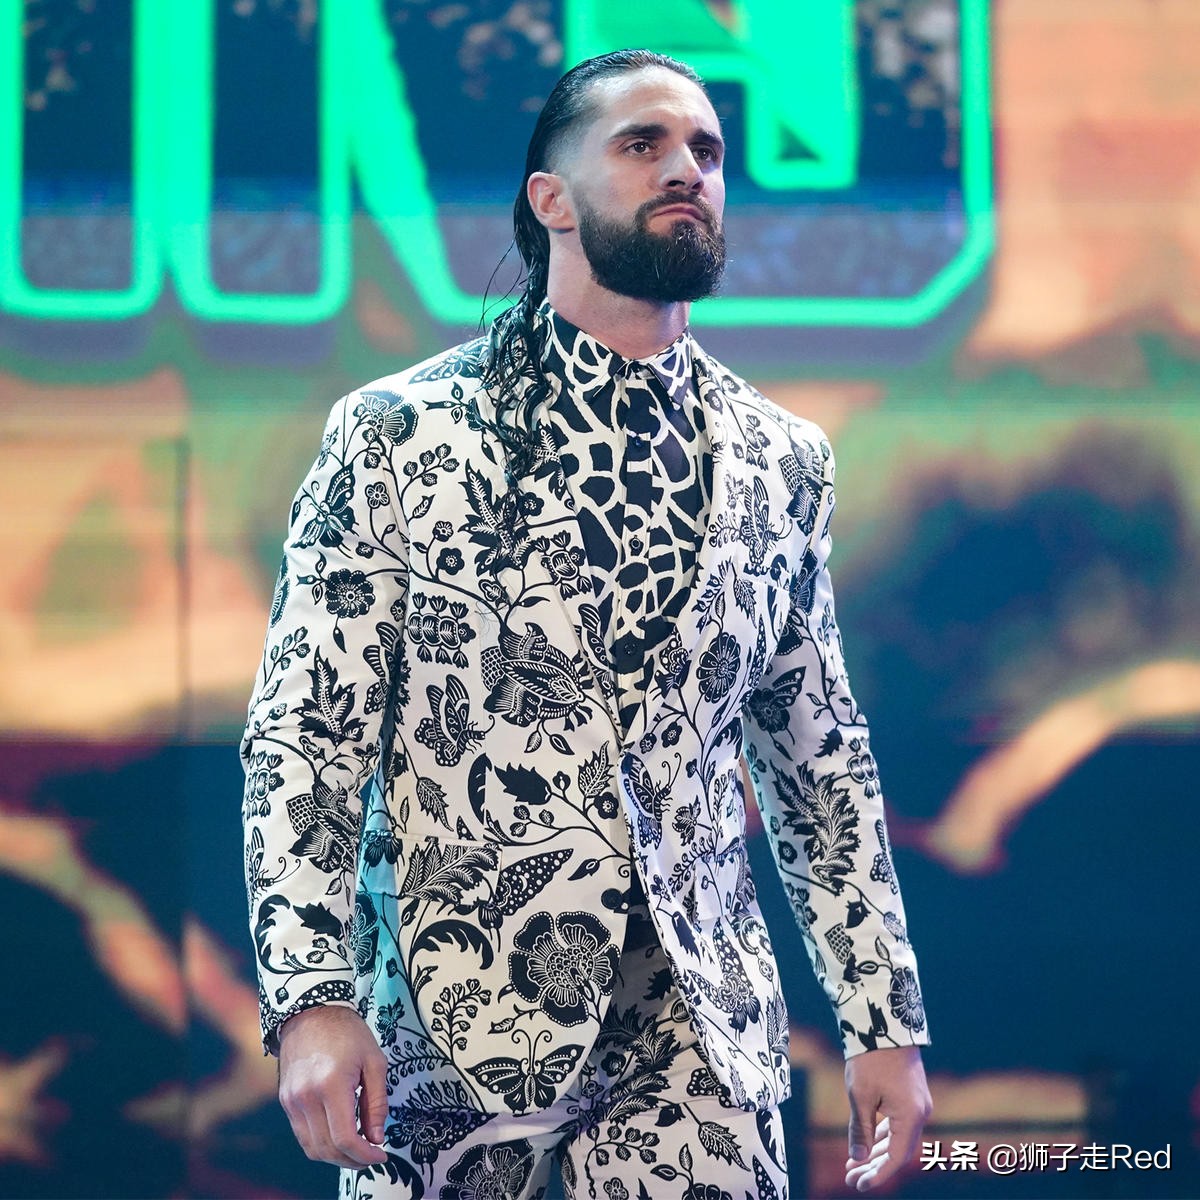 WWE第1515期RAW节目2022年6月6日赛况及精选照片集